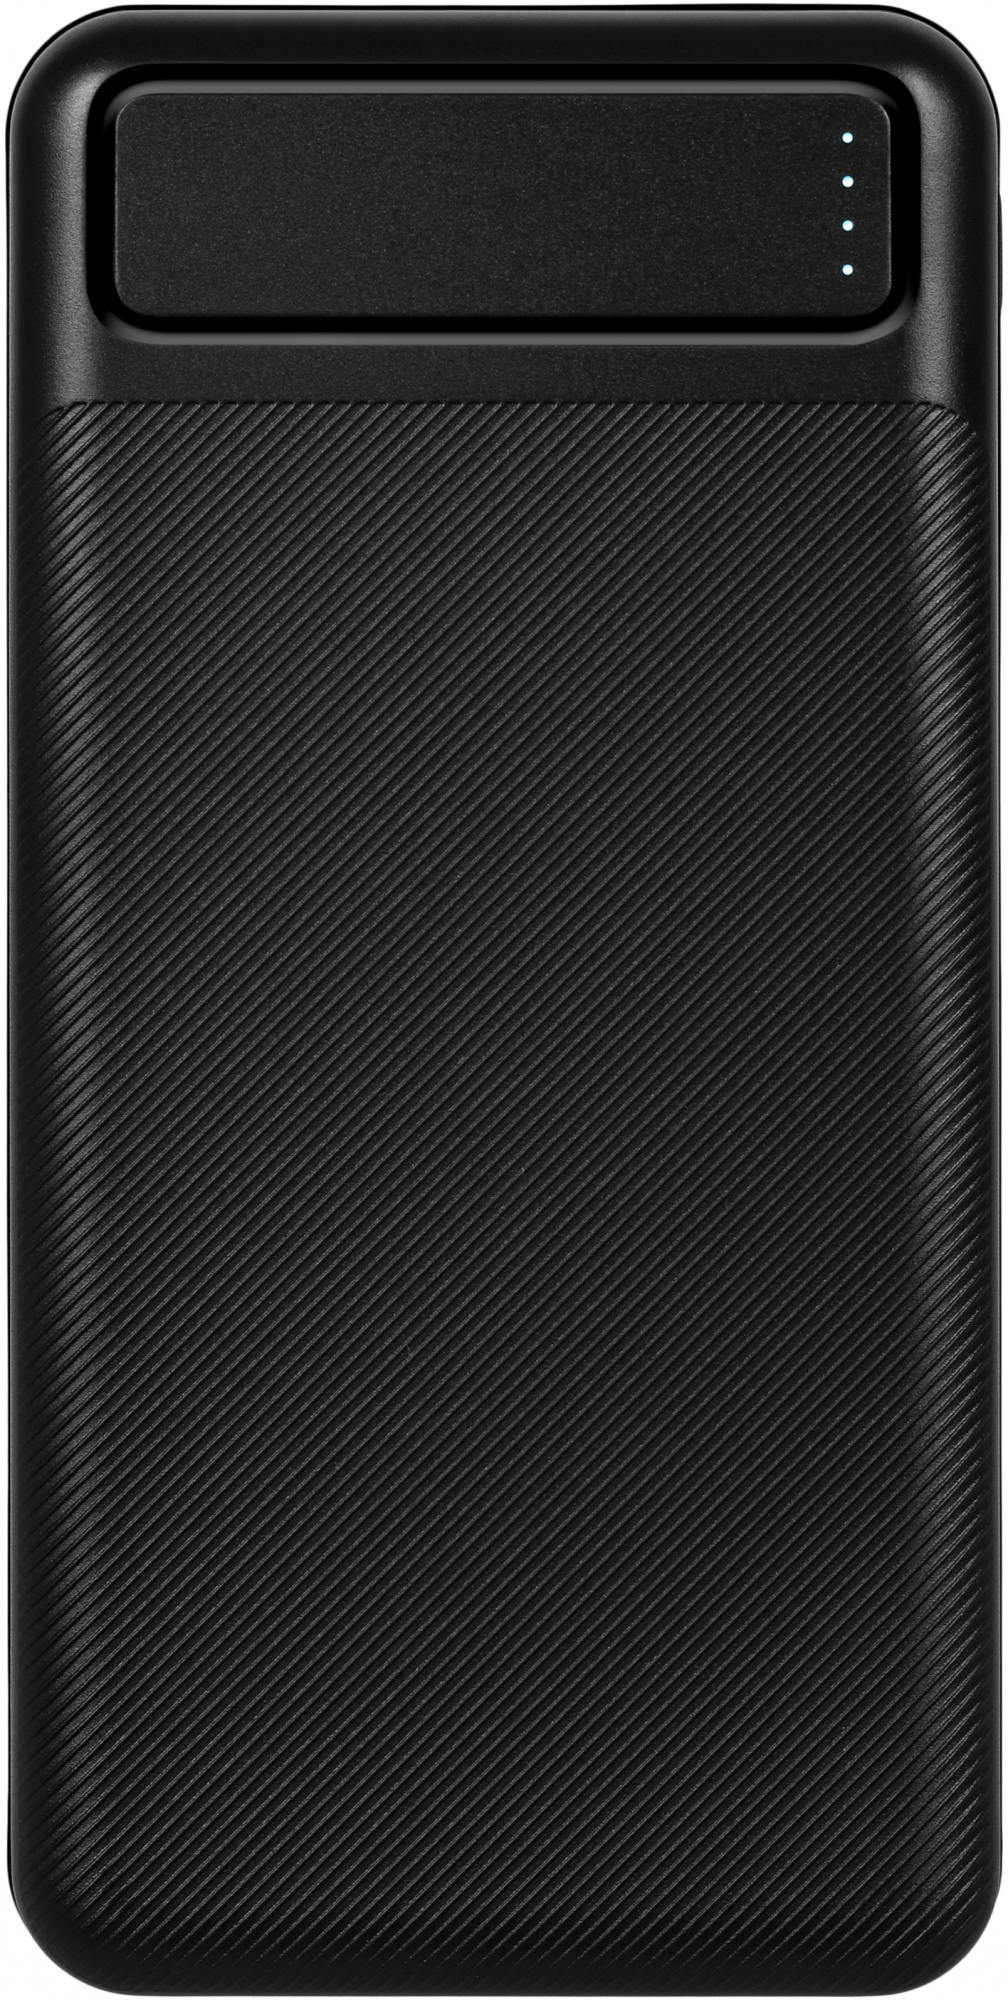 Мобильный аккумулятор TFN PowerAid 20000mAh 4.5A черный (TFN-PB-289-BK)